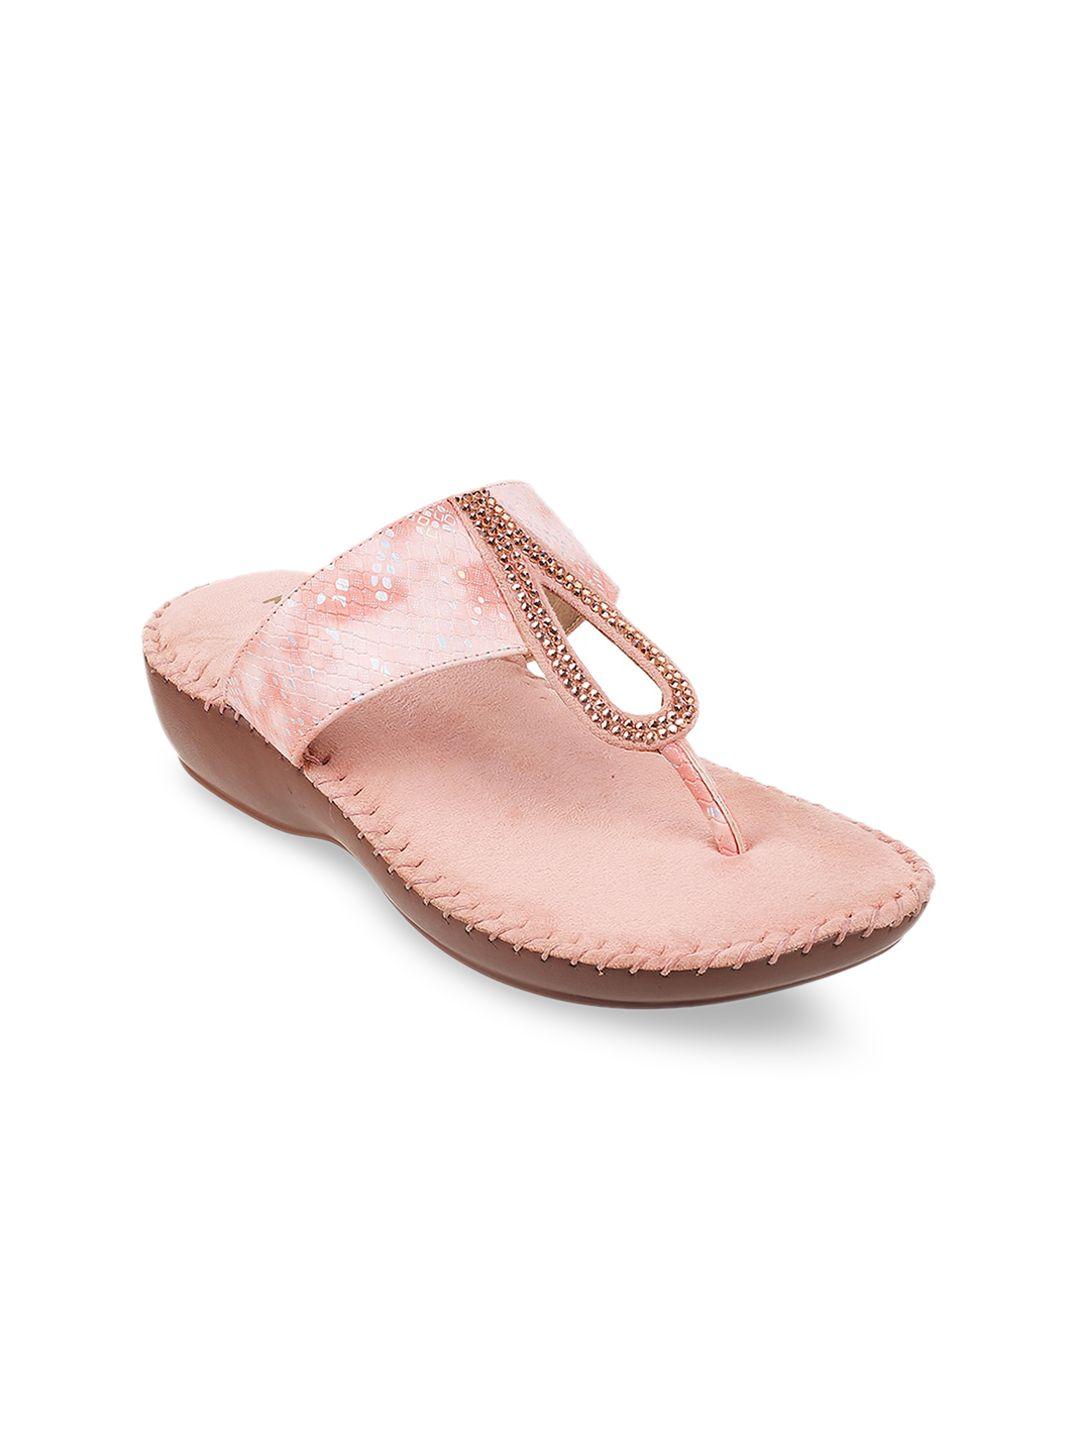 mochi pink embellished ethnic comfort heels